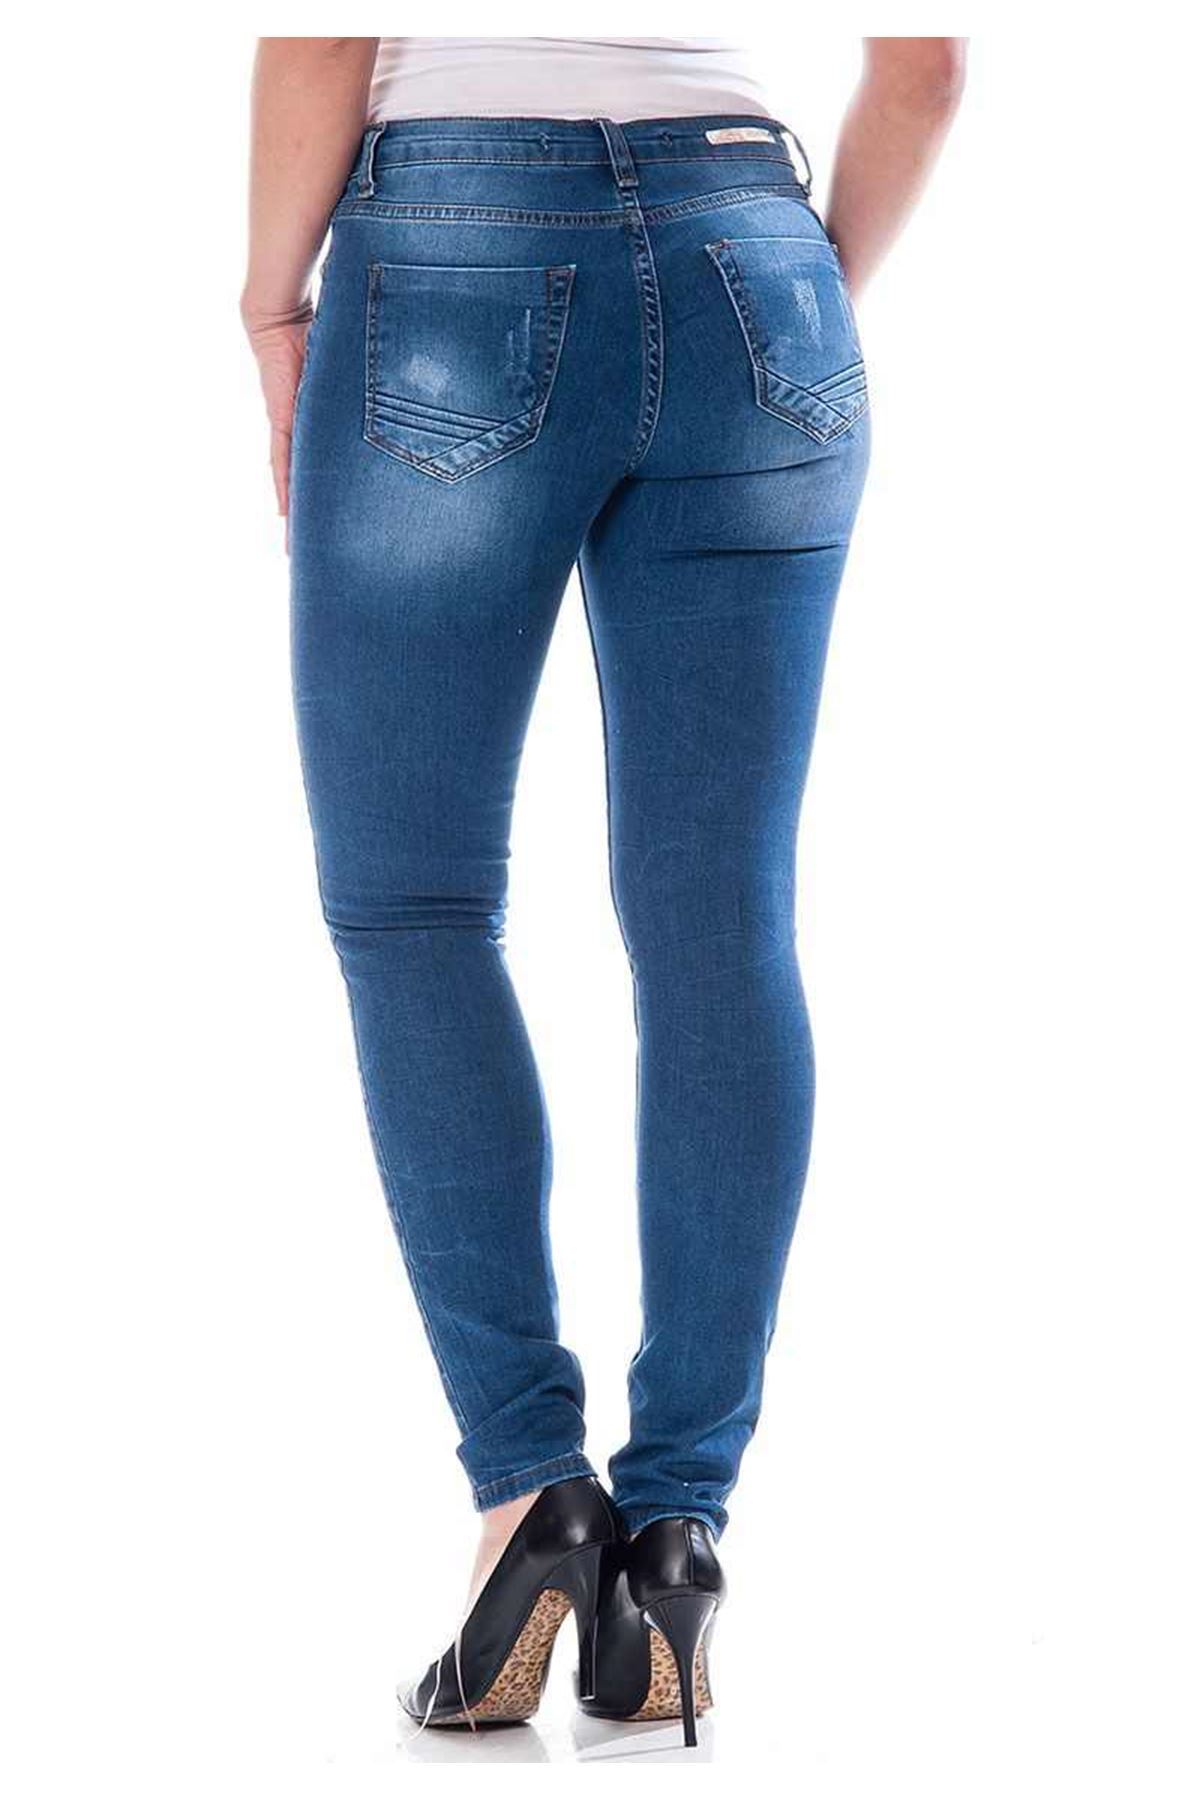 Lacivert Kadın Kot Pantolon 5A-110817